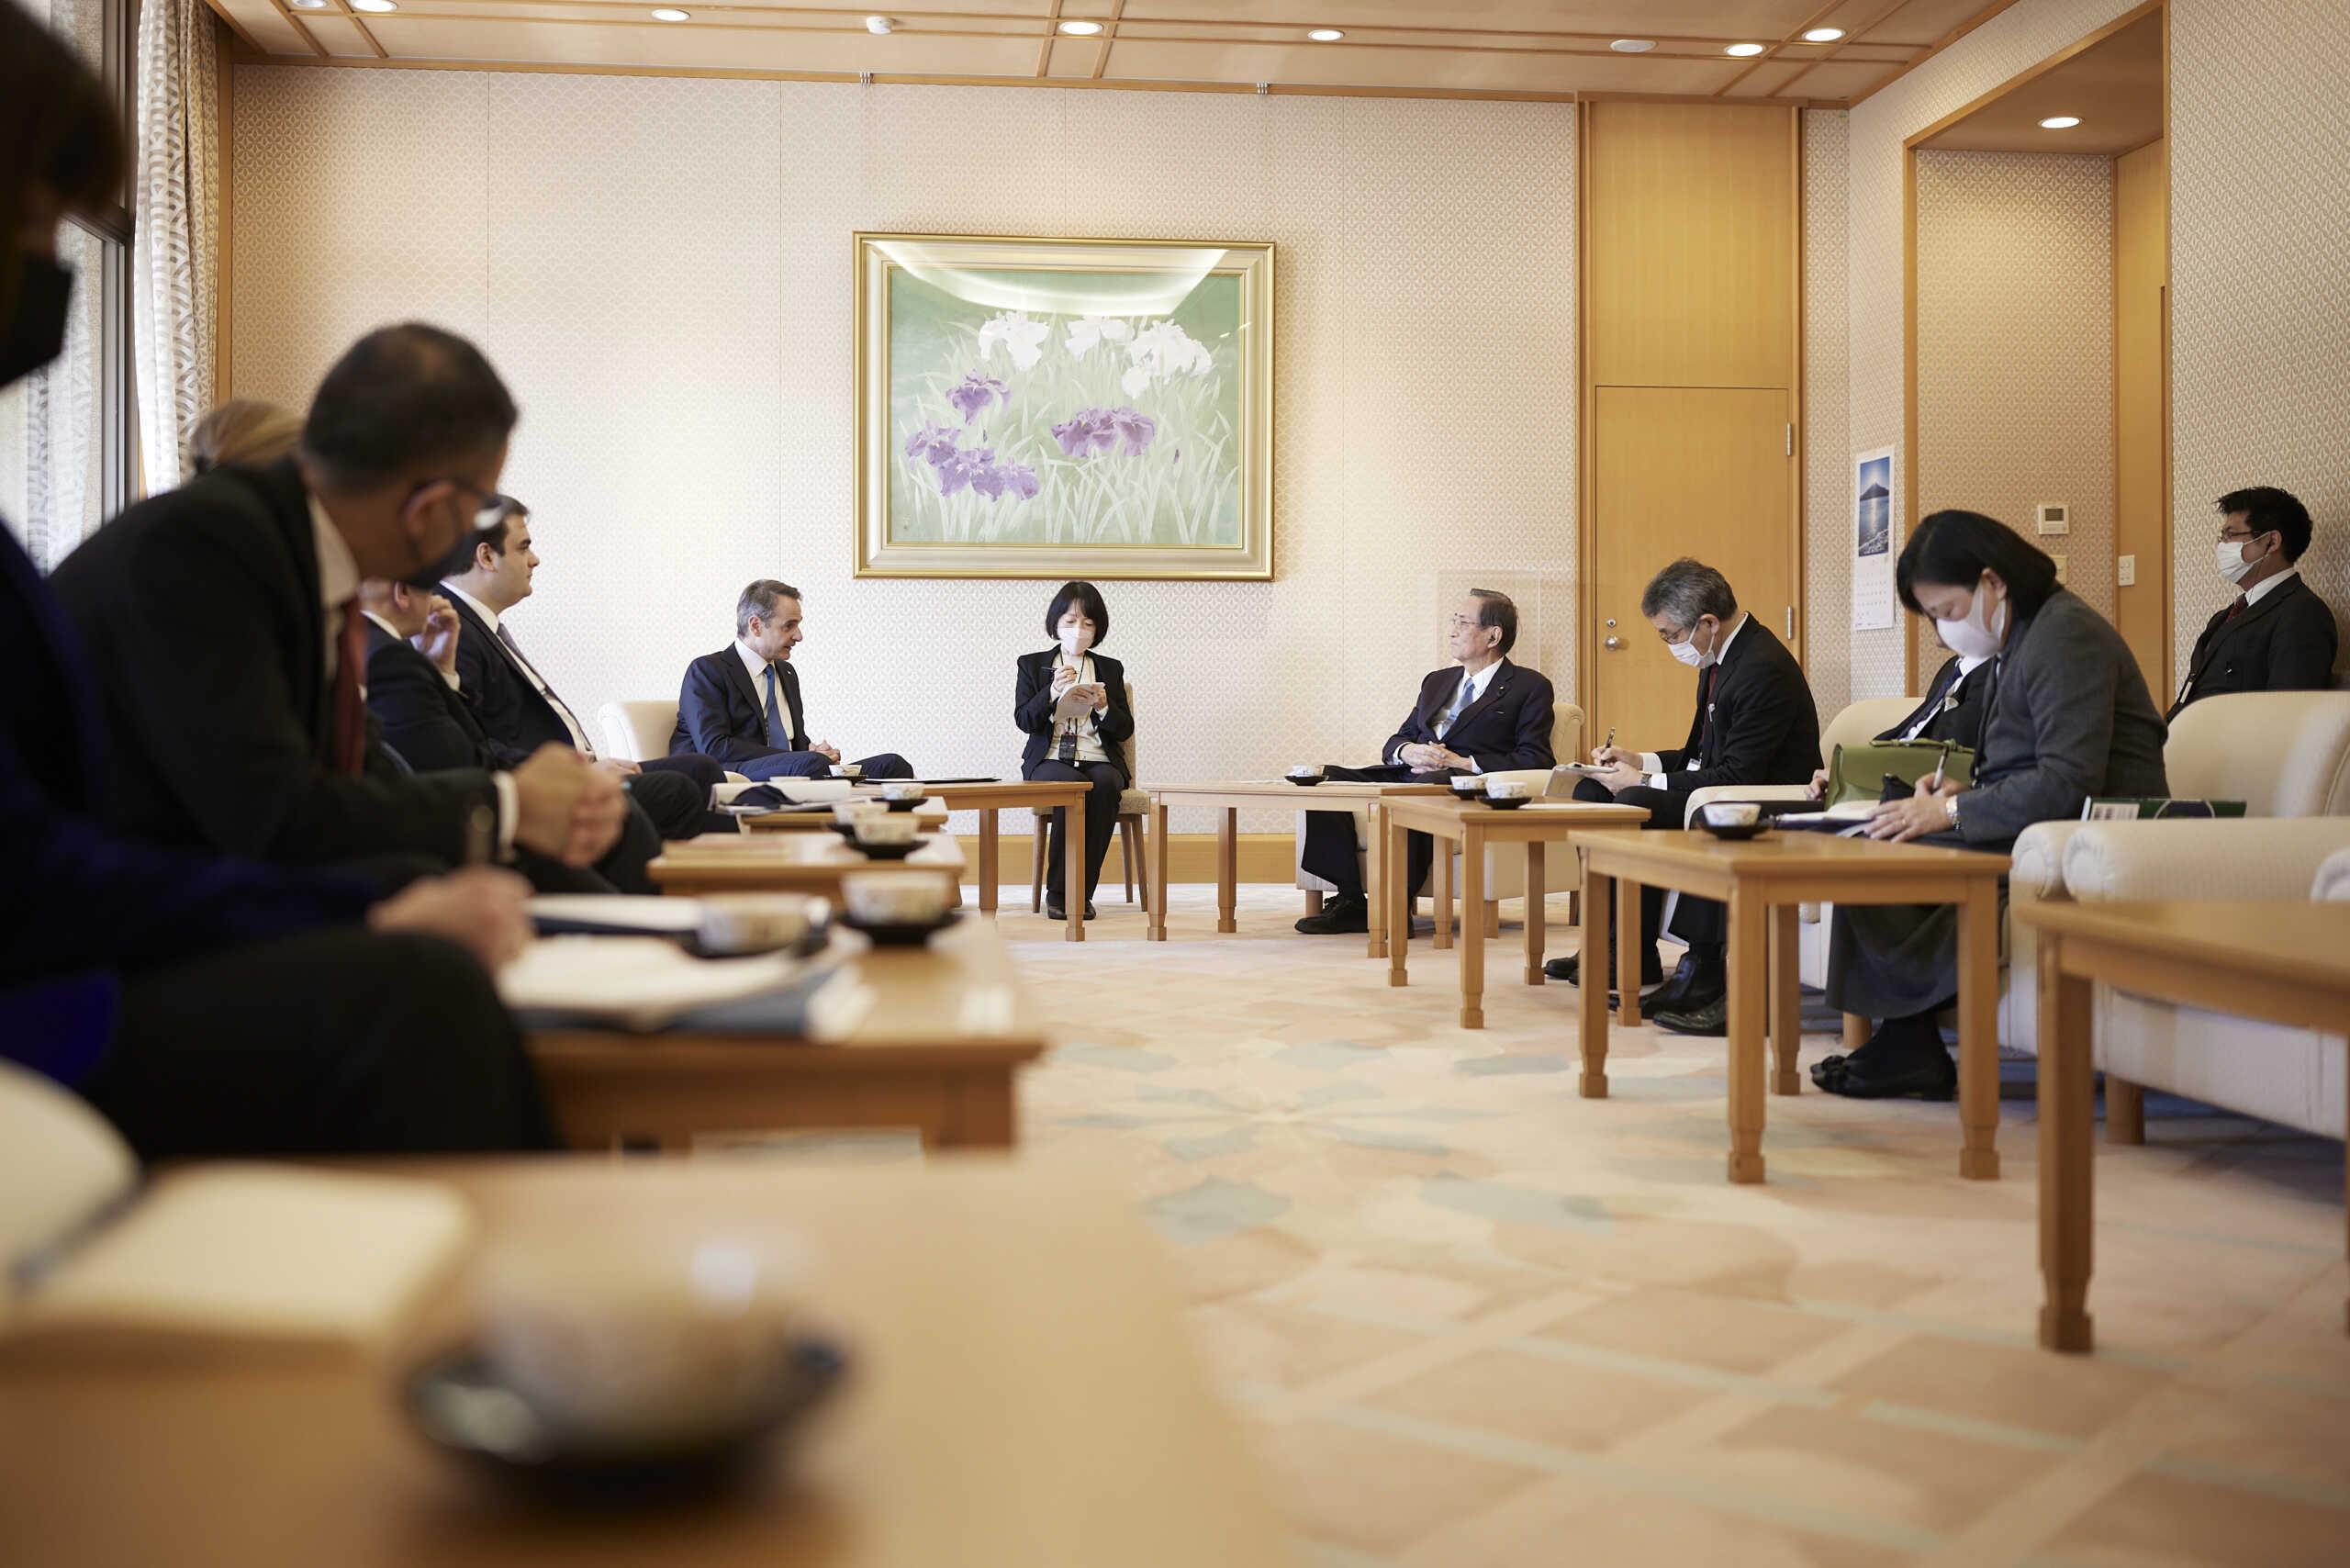 Μητσοτάκης σε Ιάπωνες επιχειρηματίες: Μέσα στο 2023 η ανάκτηση της επενδυτικής βαθμίδας